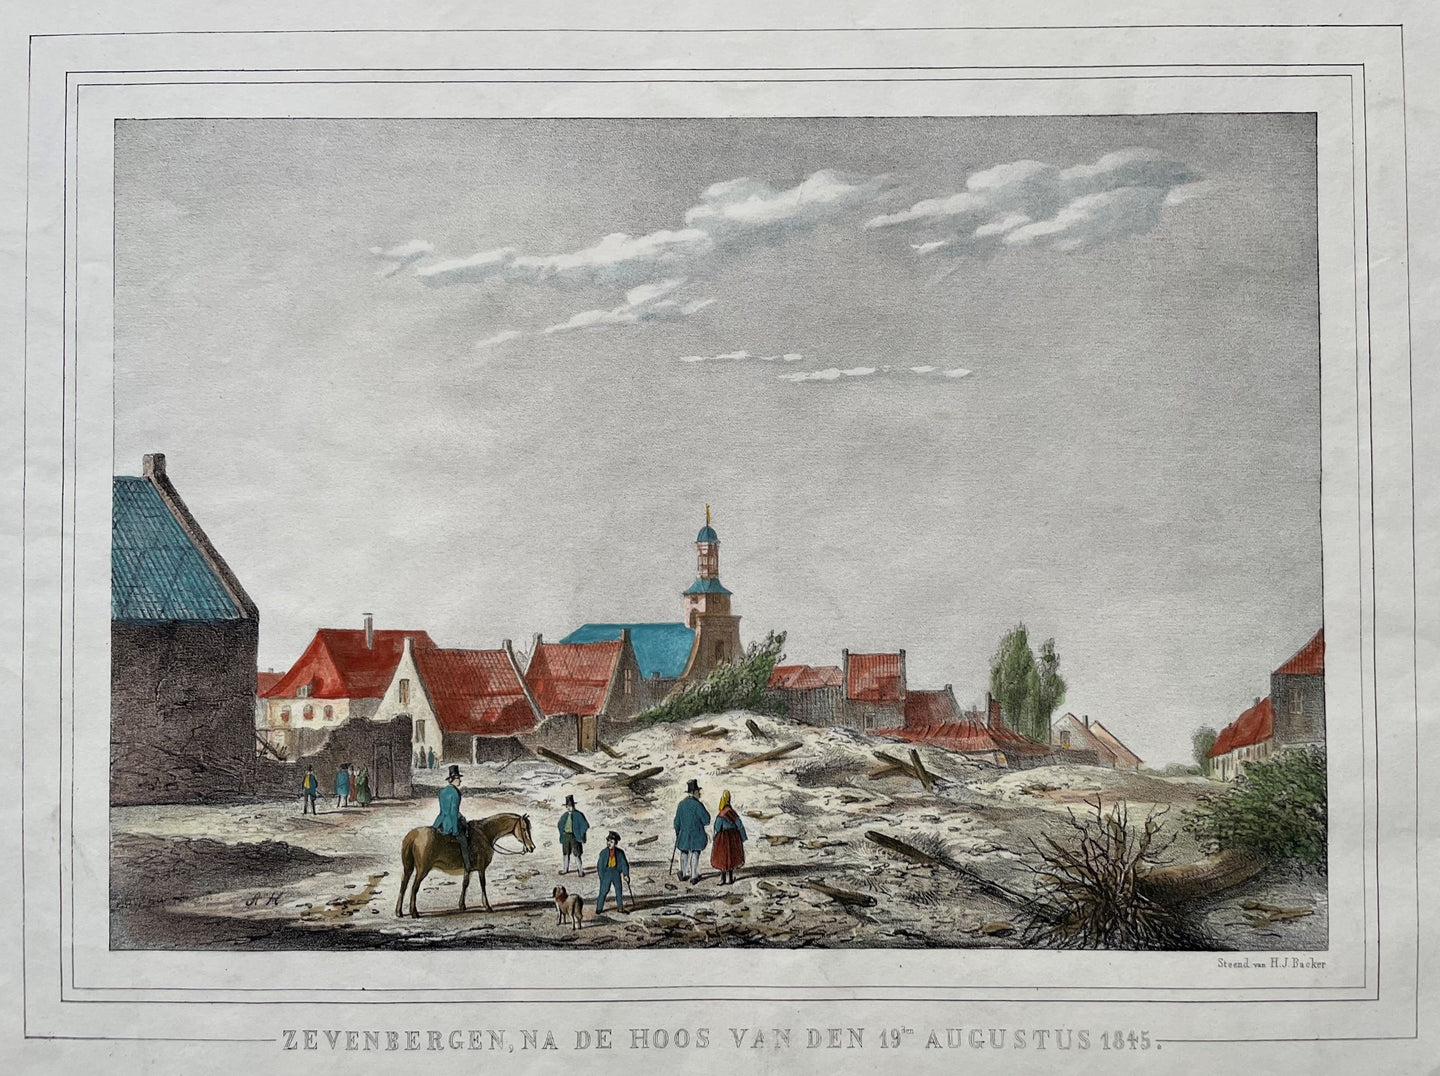 Zevenbergen - Hilmar Johannes Backer - 1845